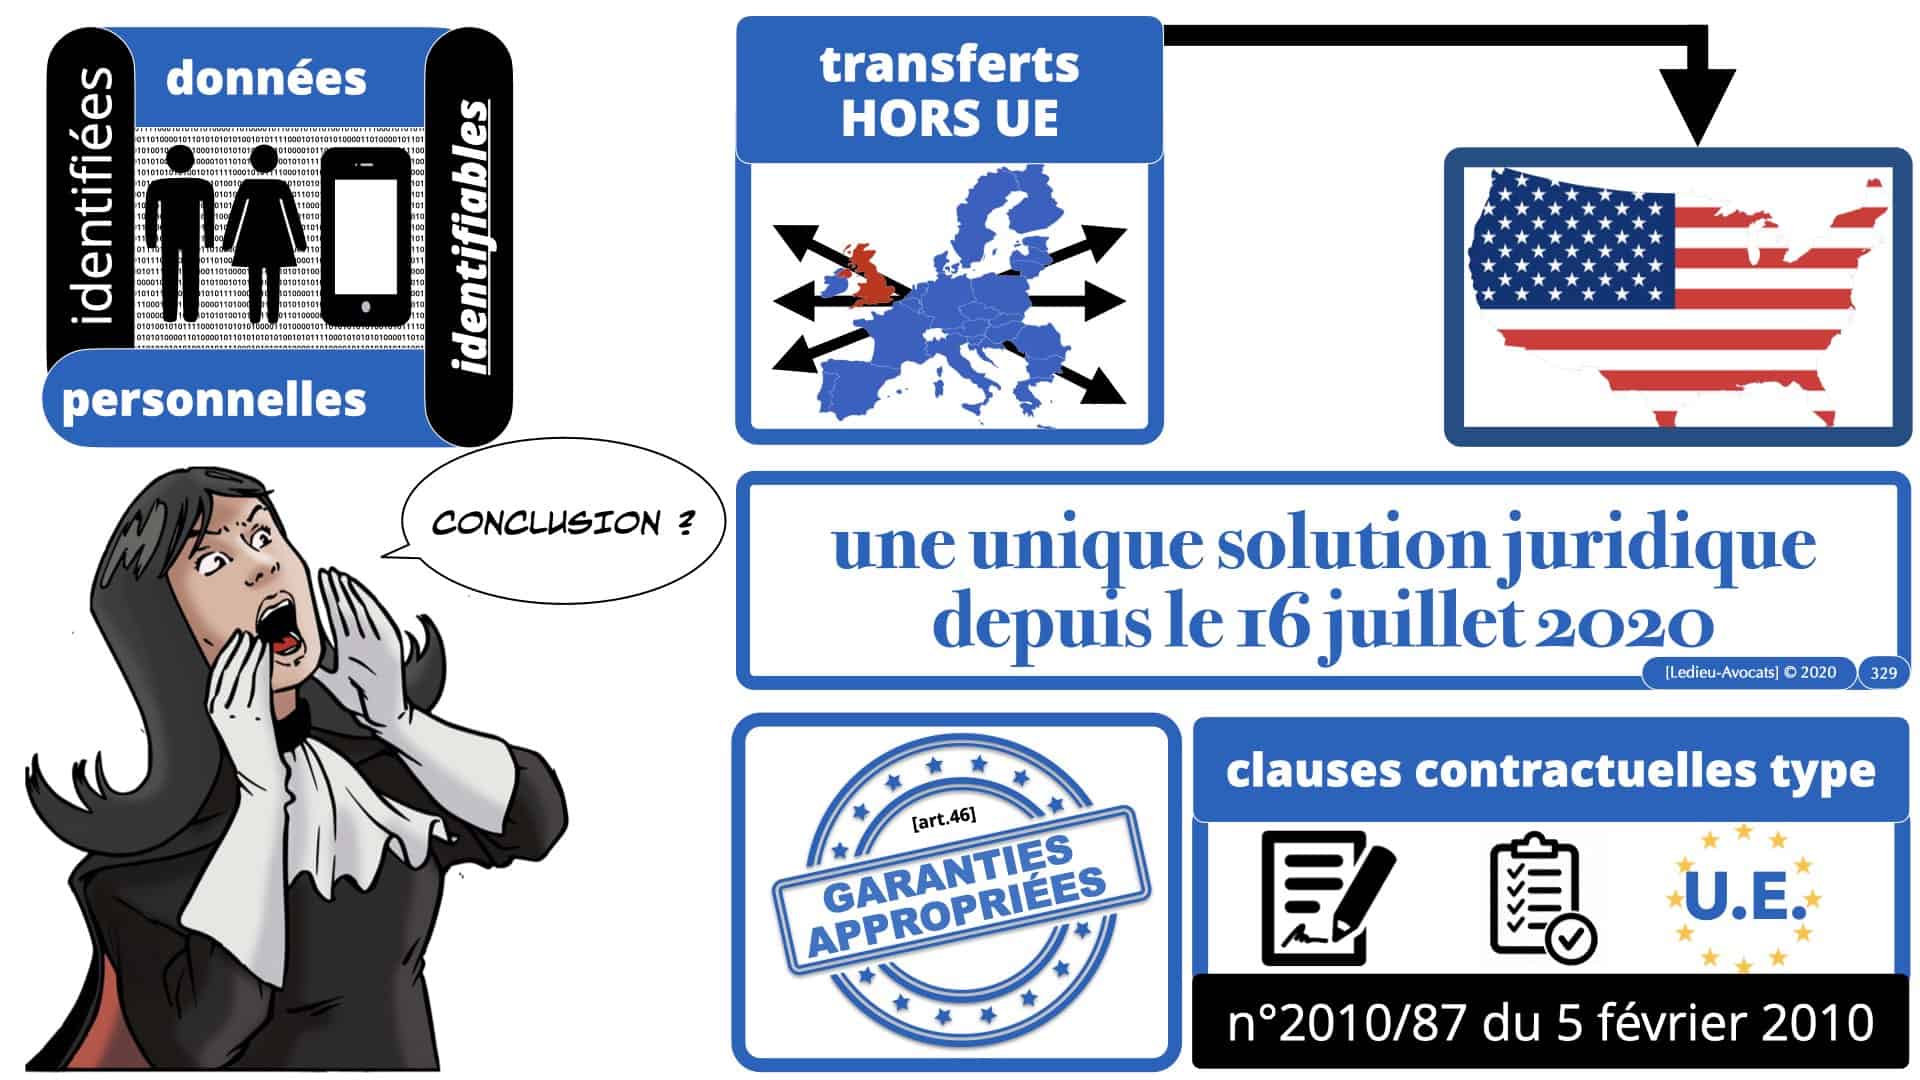 RGPD e-Privacy données personnelles jurisprudence formation Lamy Les Echos 10-02-2021 ©Ledieu-Avocats.329